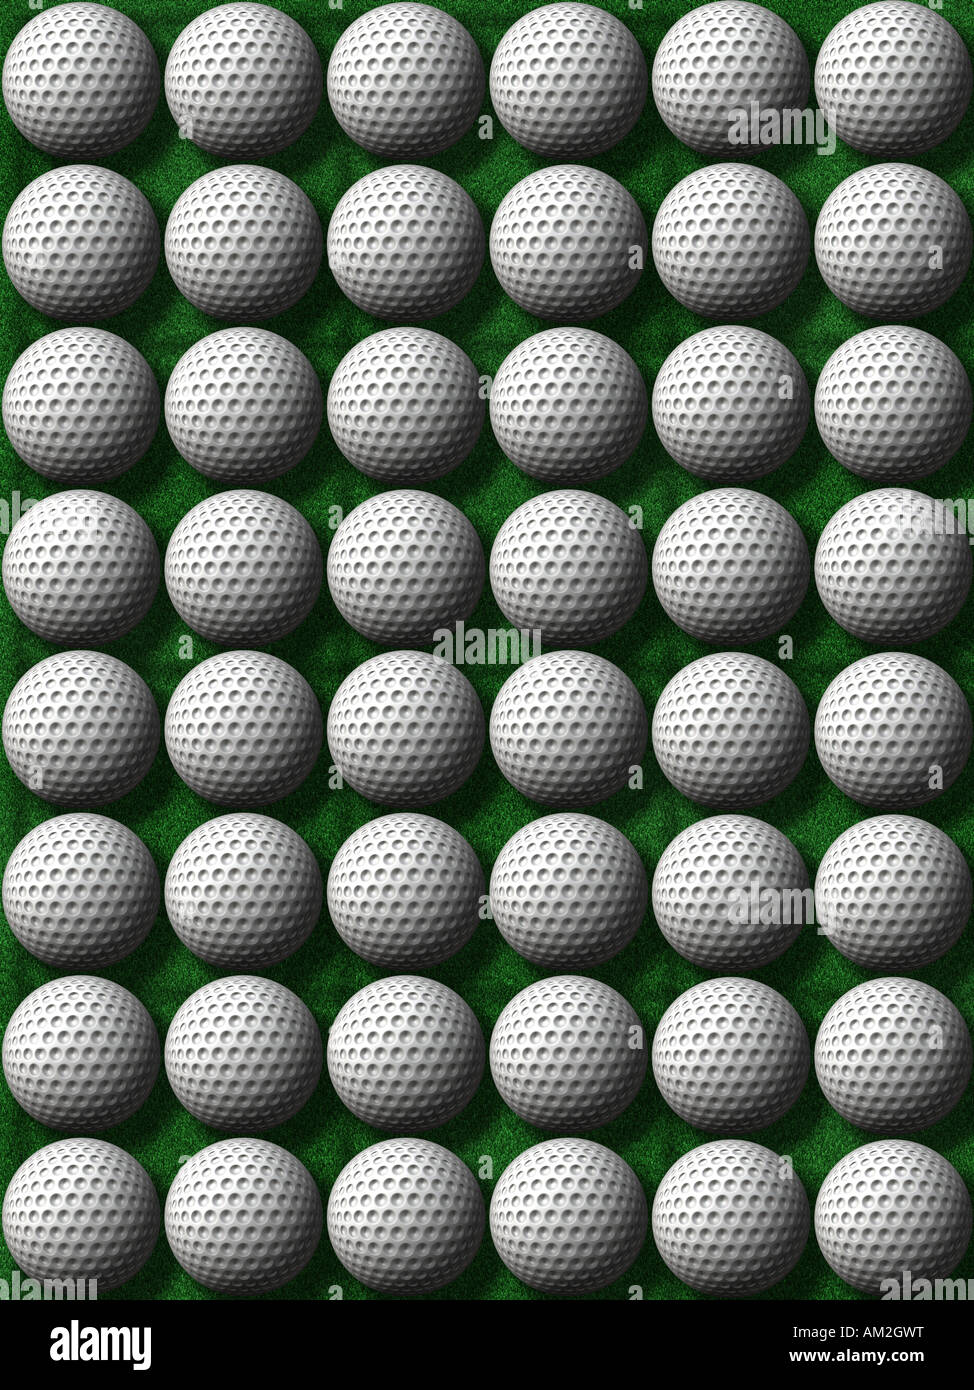 Des tas de balles de golf sur un fond d'herbe verte Banque D'Images